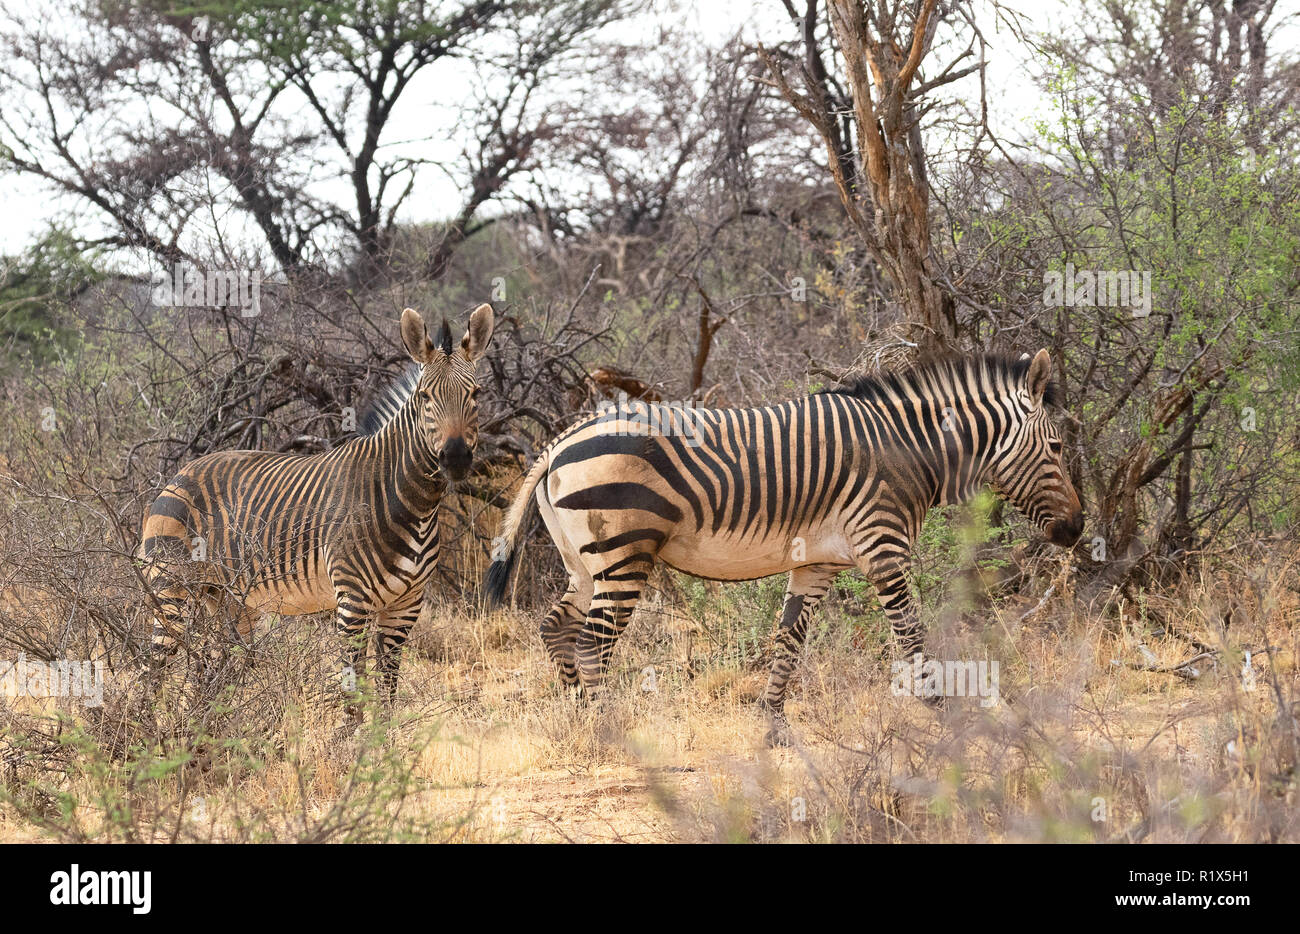 Mountain Zebra ( Equus zebra ), une paire de zèbres de montagne, réserve naturelle de Namibie Okonjima, Afrique Banque D'Images